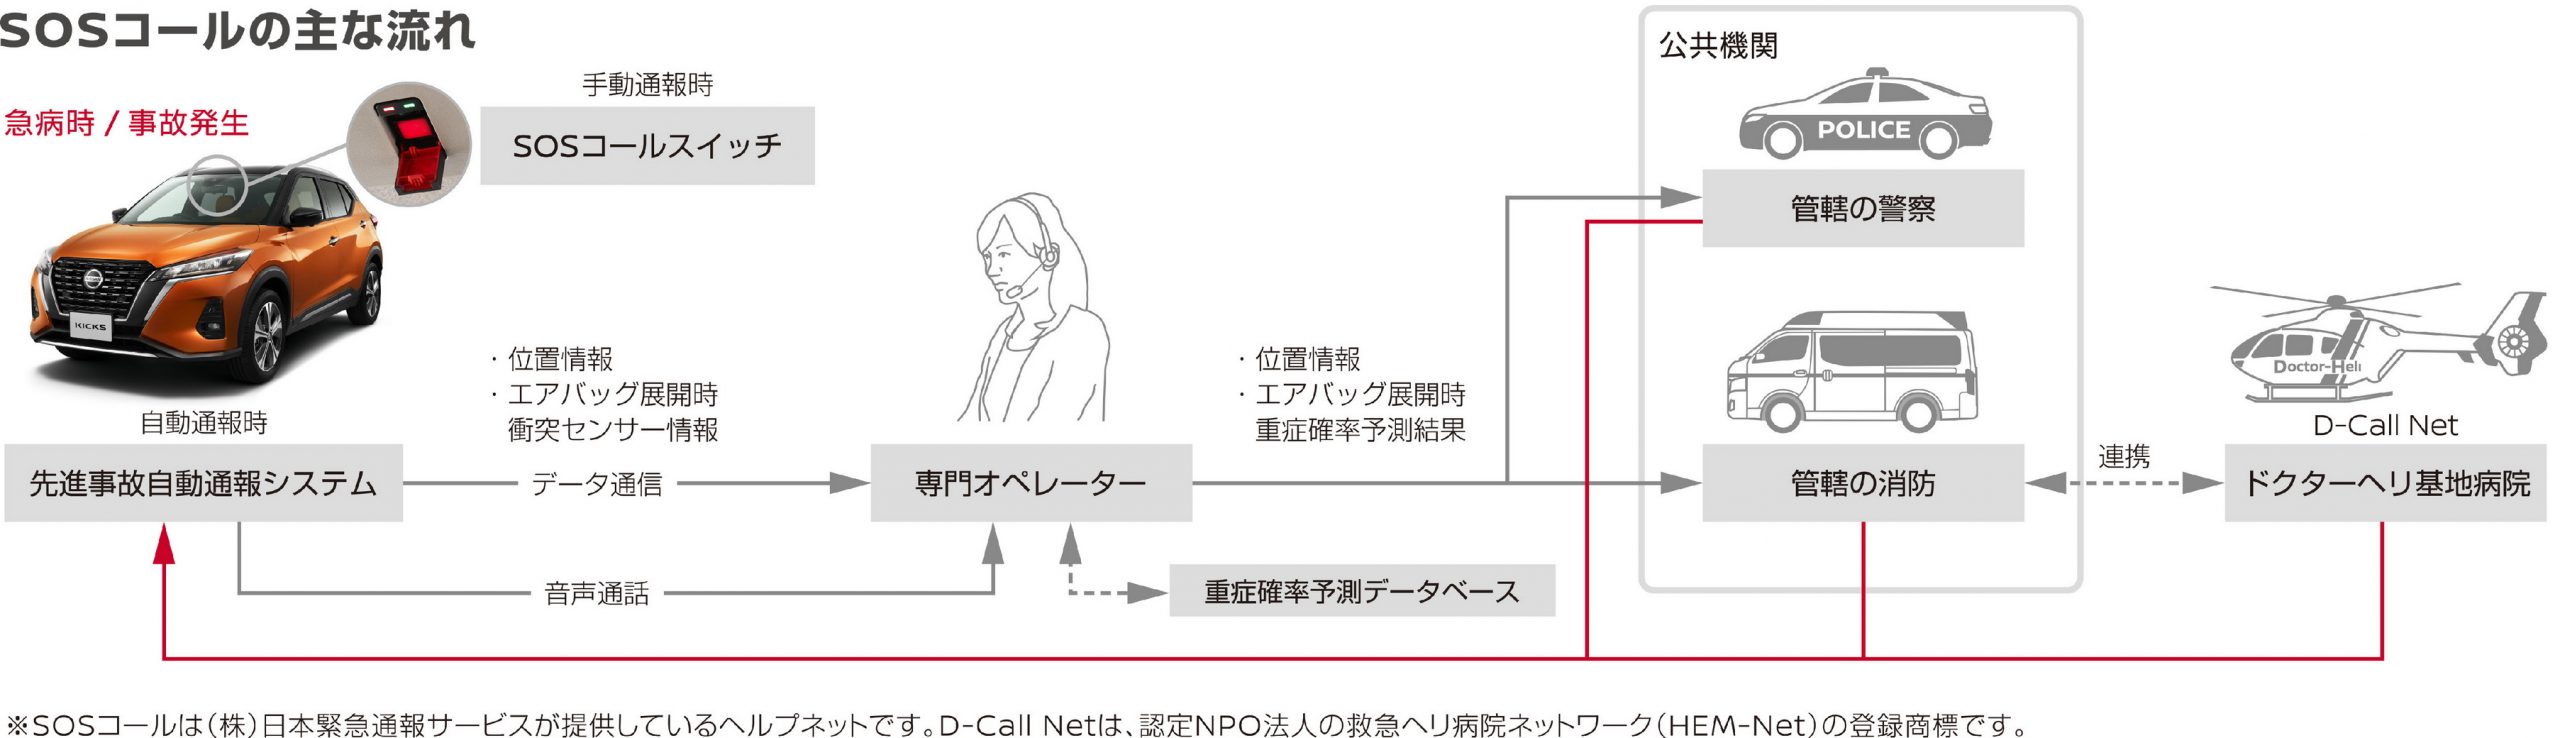 نيسان كيكس 2021 تدشن في اليابان "صور وتفاصيل جديدة" 87